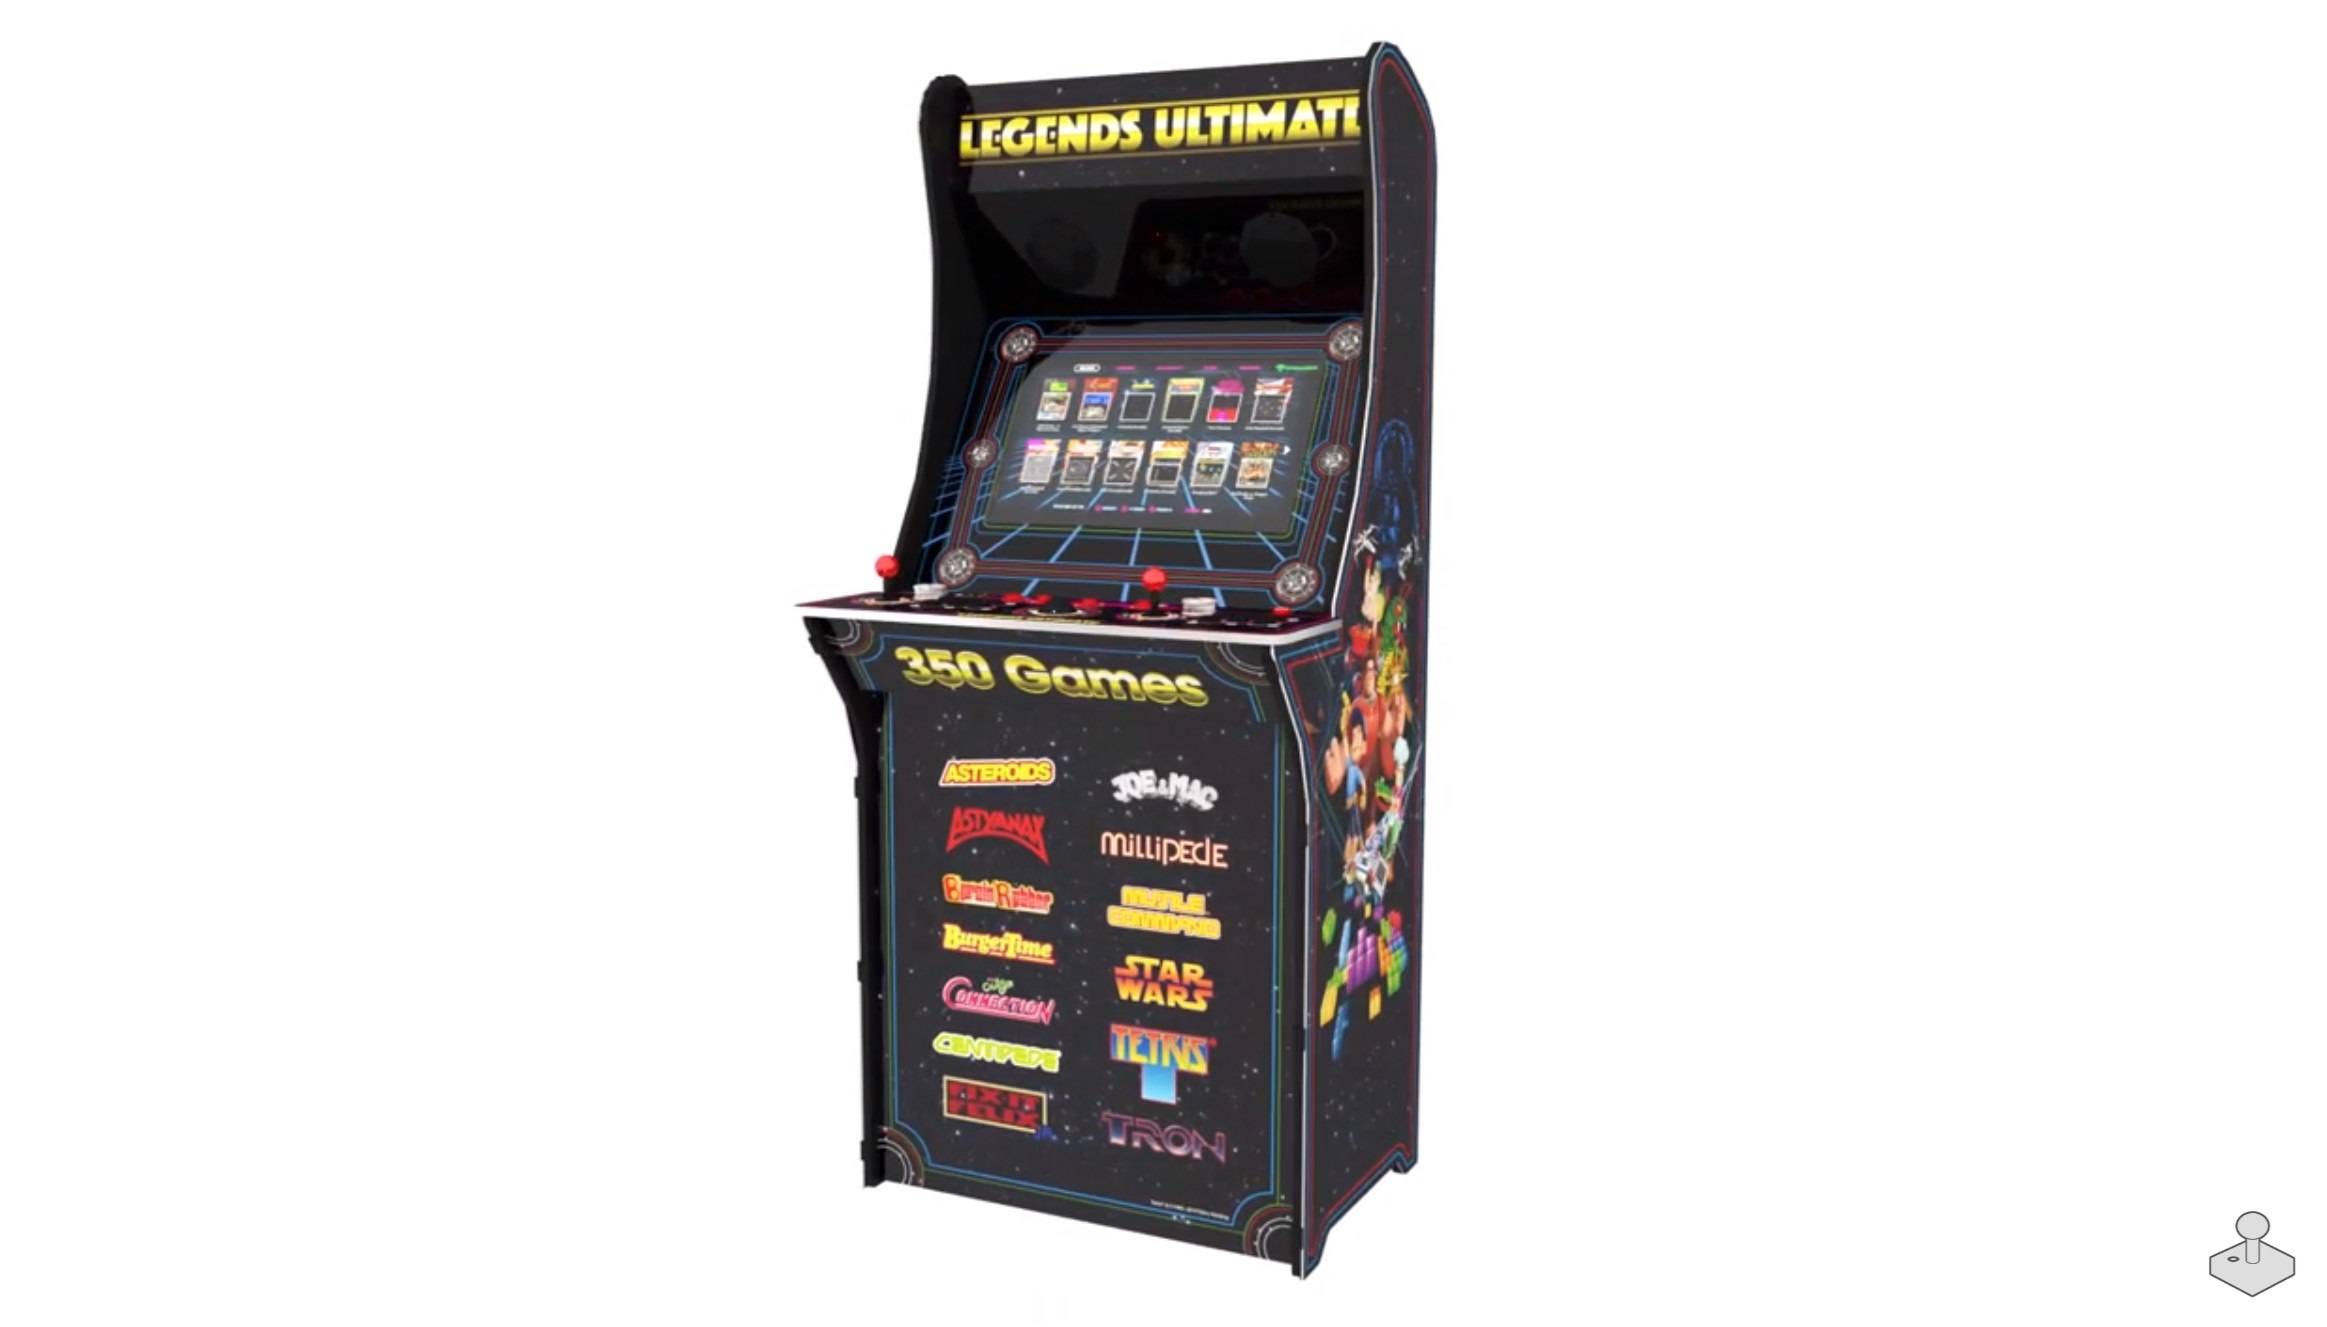 Legends Ultimate Arcade Machine 3D video